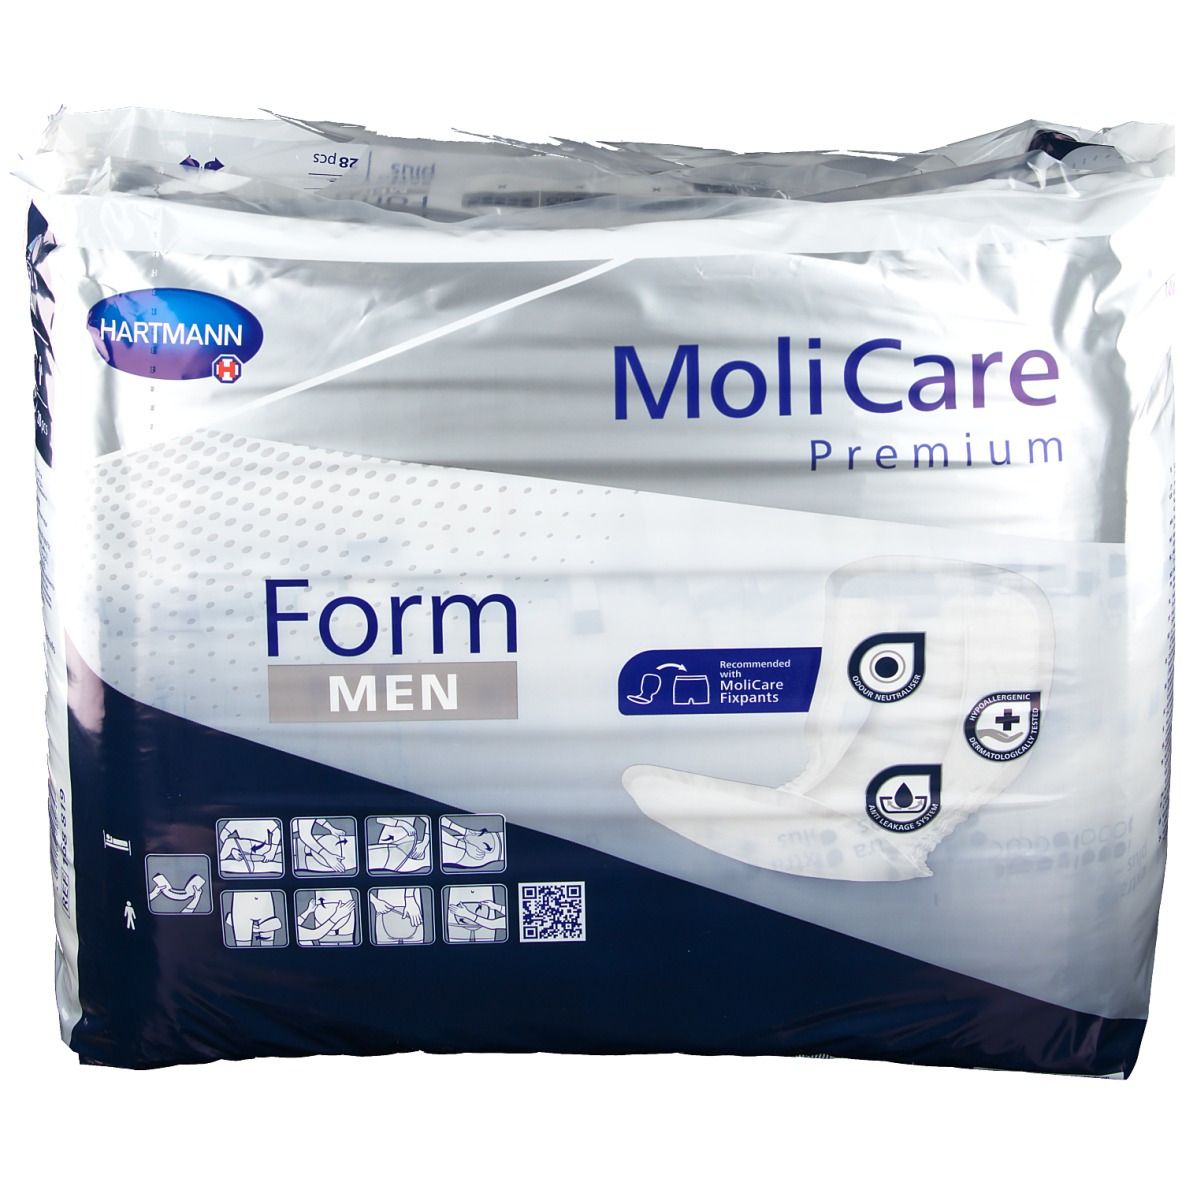 MoliCare® Premium Form Men extra plus